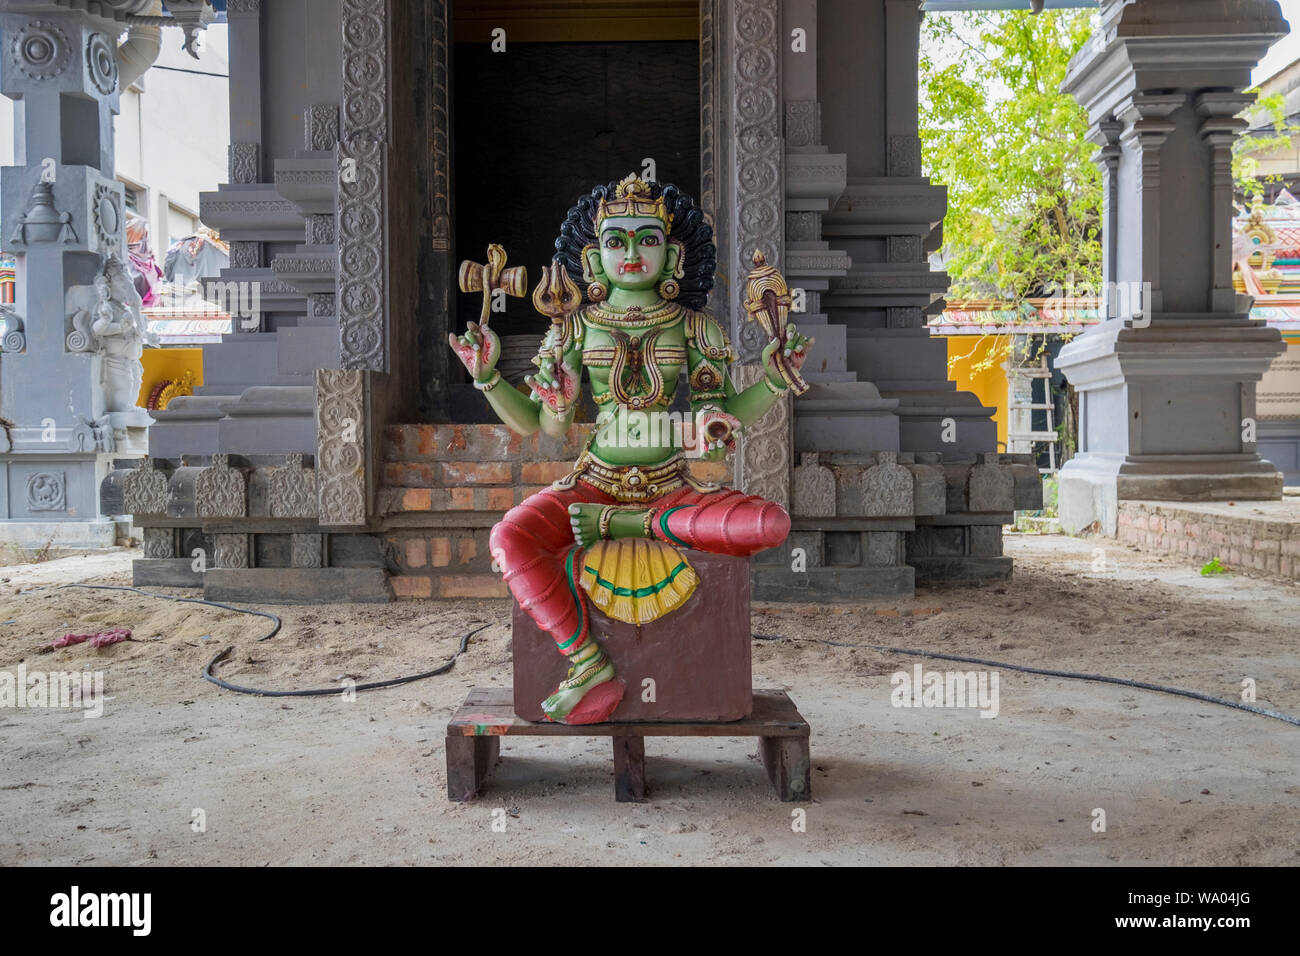 Ein renoviertes hinduistischen Gottes statue sitzt, wartend auf einen Drawidischen stil Hindutempel in Port Dickson, Malaysia platziert zu werden. Stockfoto